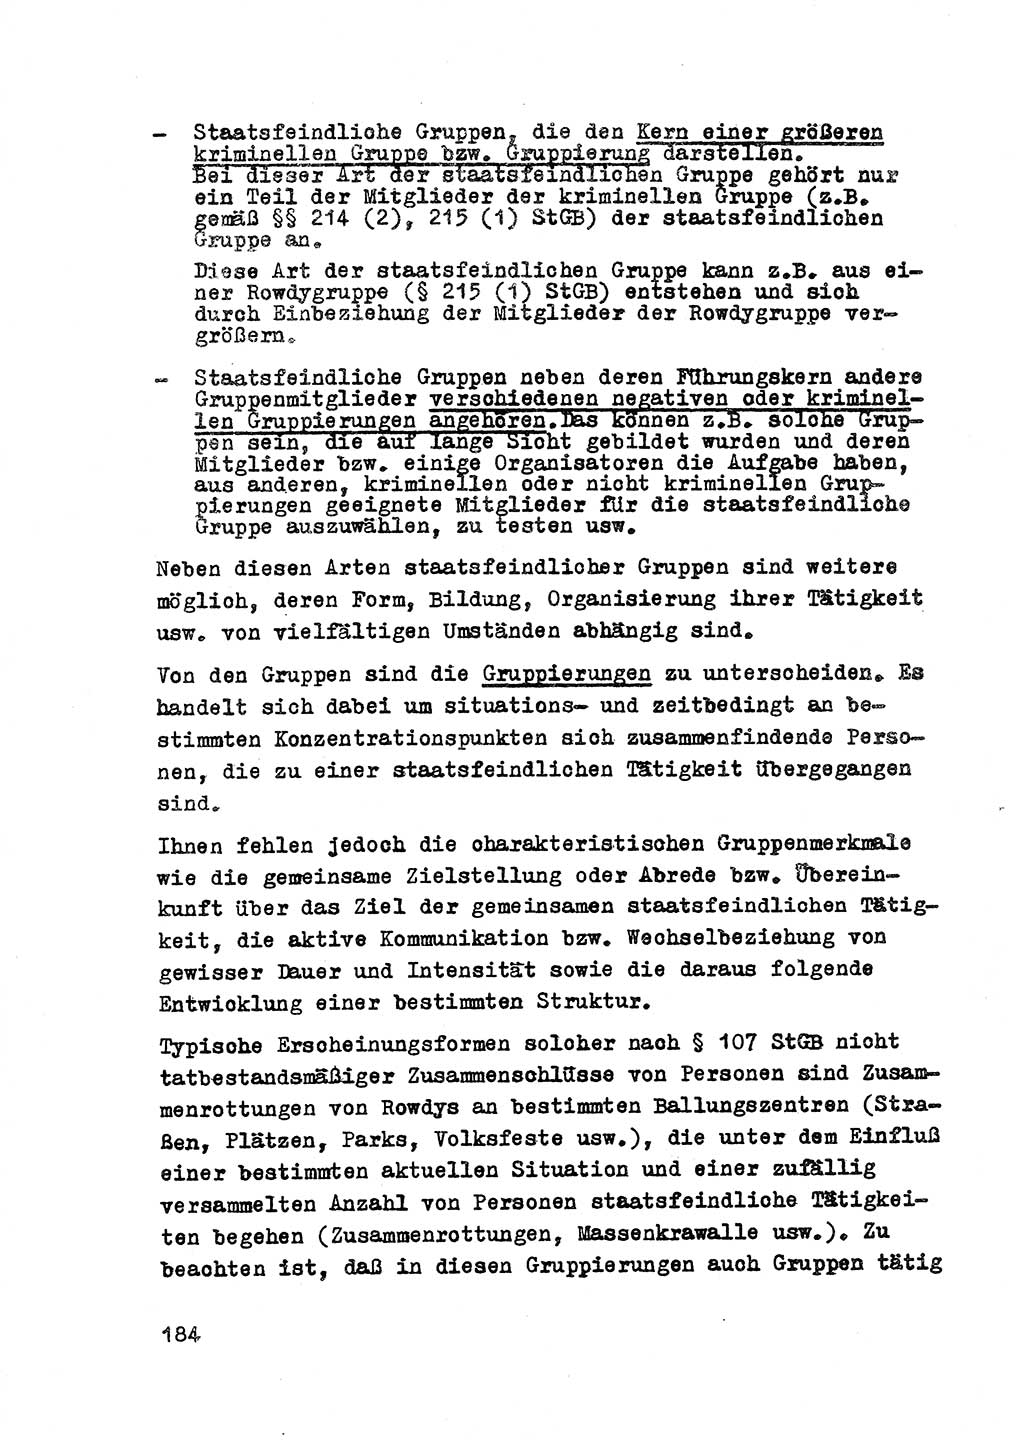 Strafrecht der DDR (Deutsche Demokratische Republik), Besonderer Teil, Lehrmaterial, Heft 2 1969, Seite 184 (Strafr. DDR BT Lehrmat. H. 2 1969, S. 184)